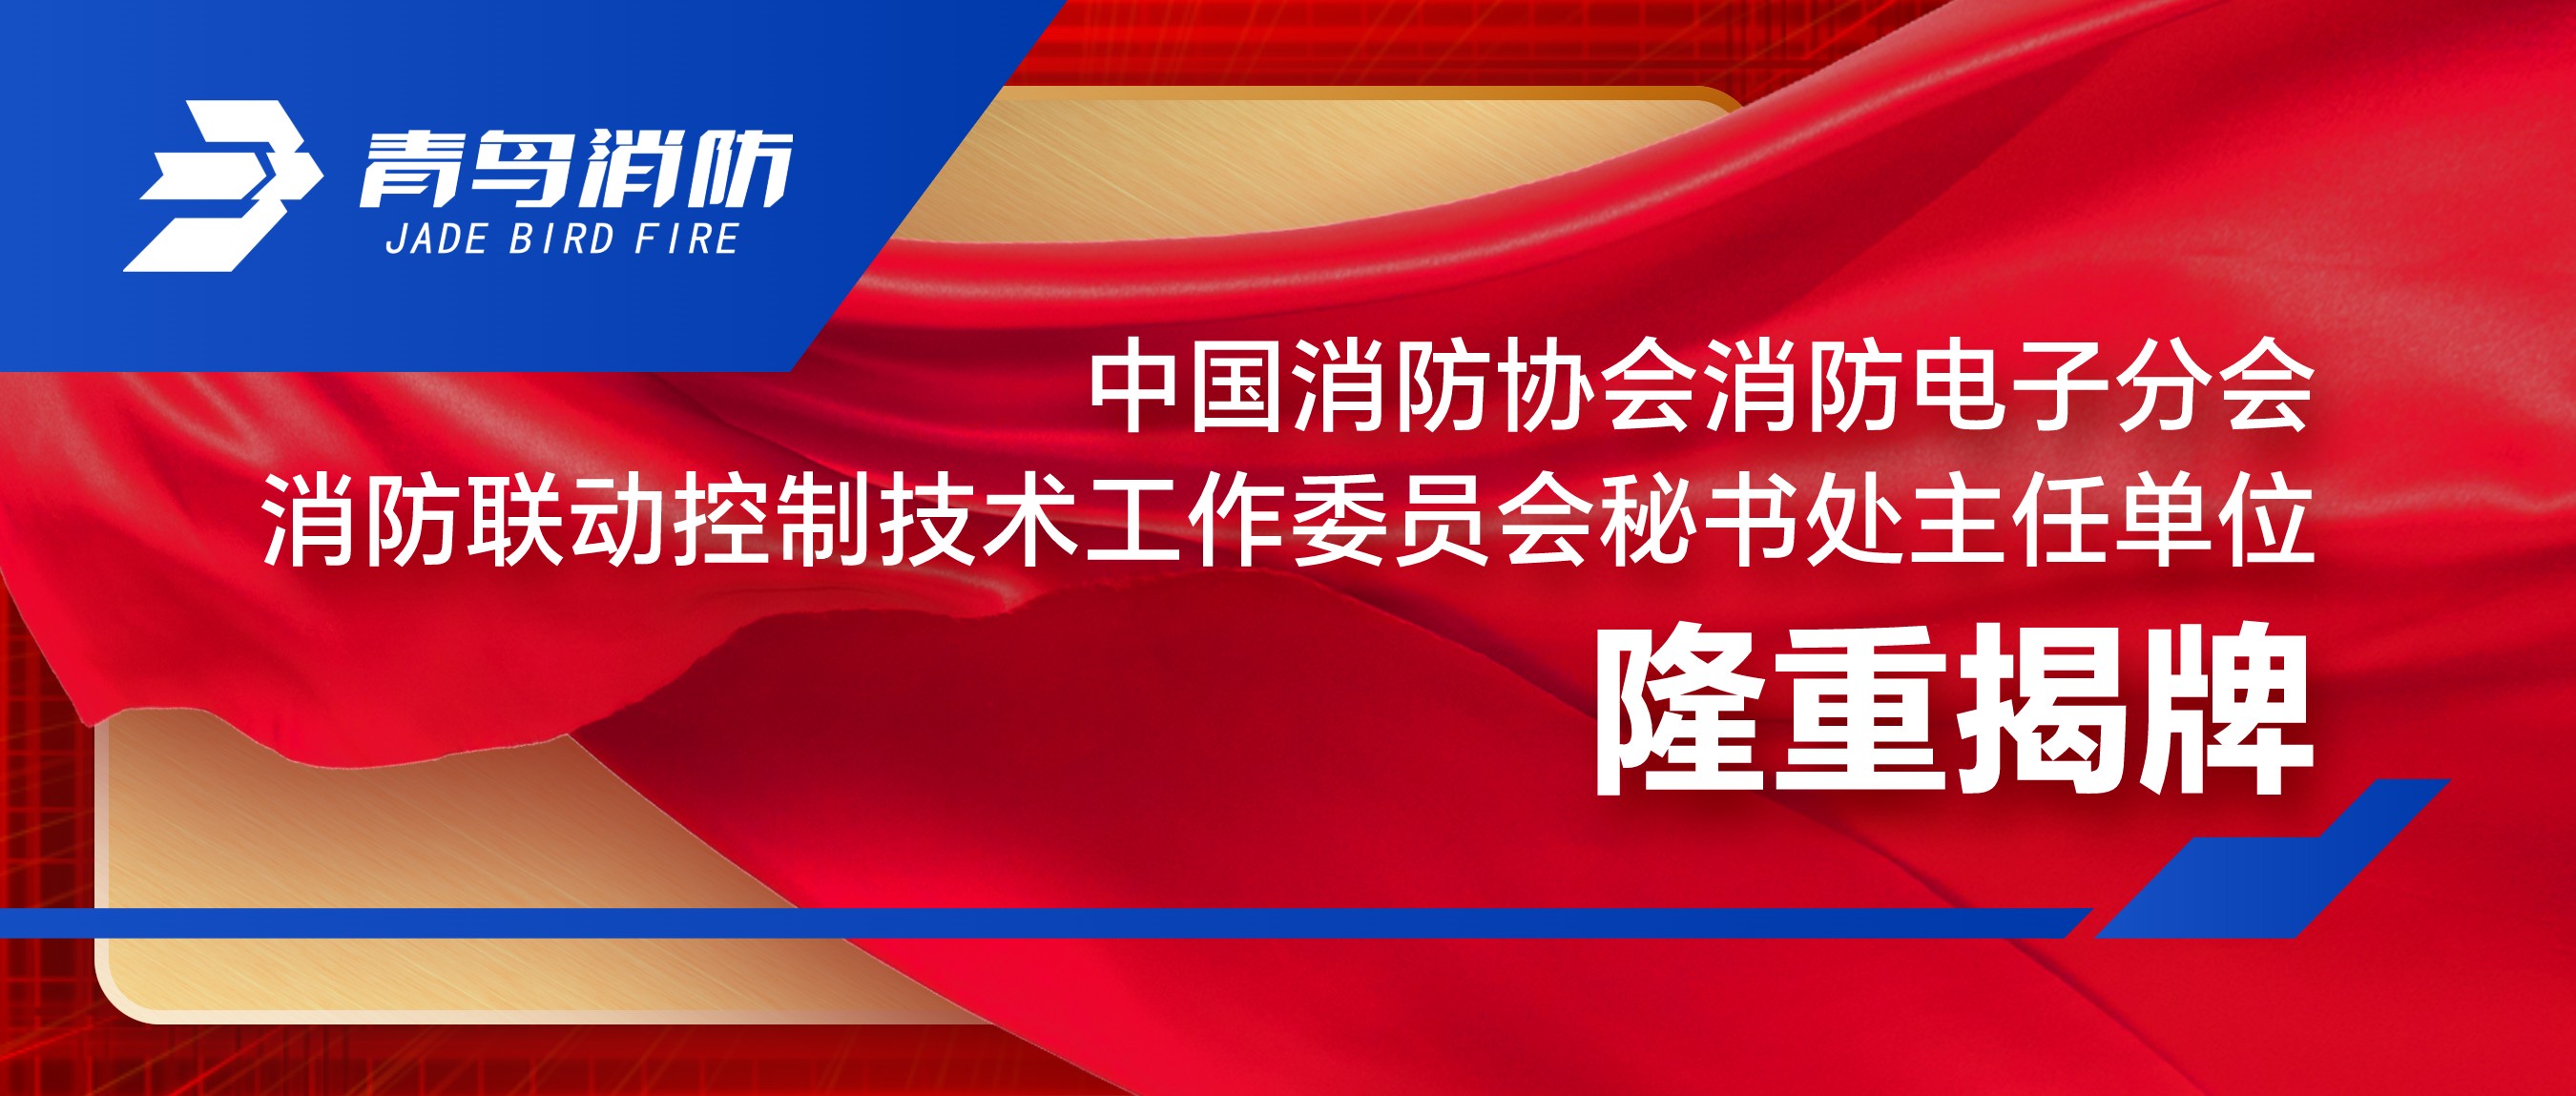 中国消防协会消防电子分会消防联动控制技术工作委员会秘书处主任单位隆重揭牌